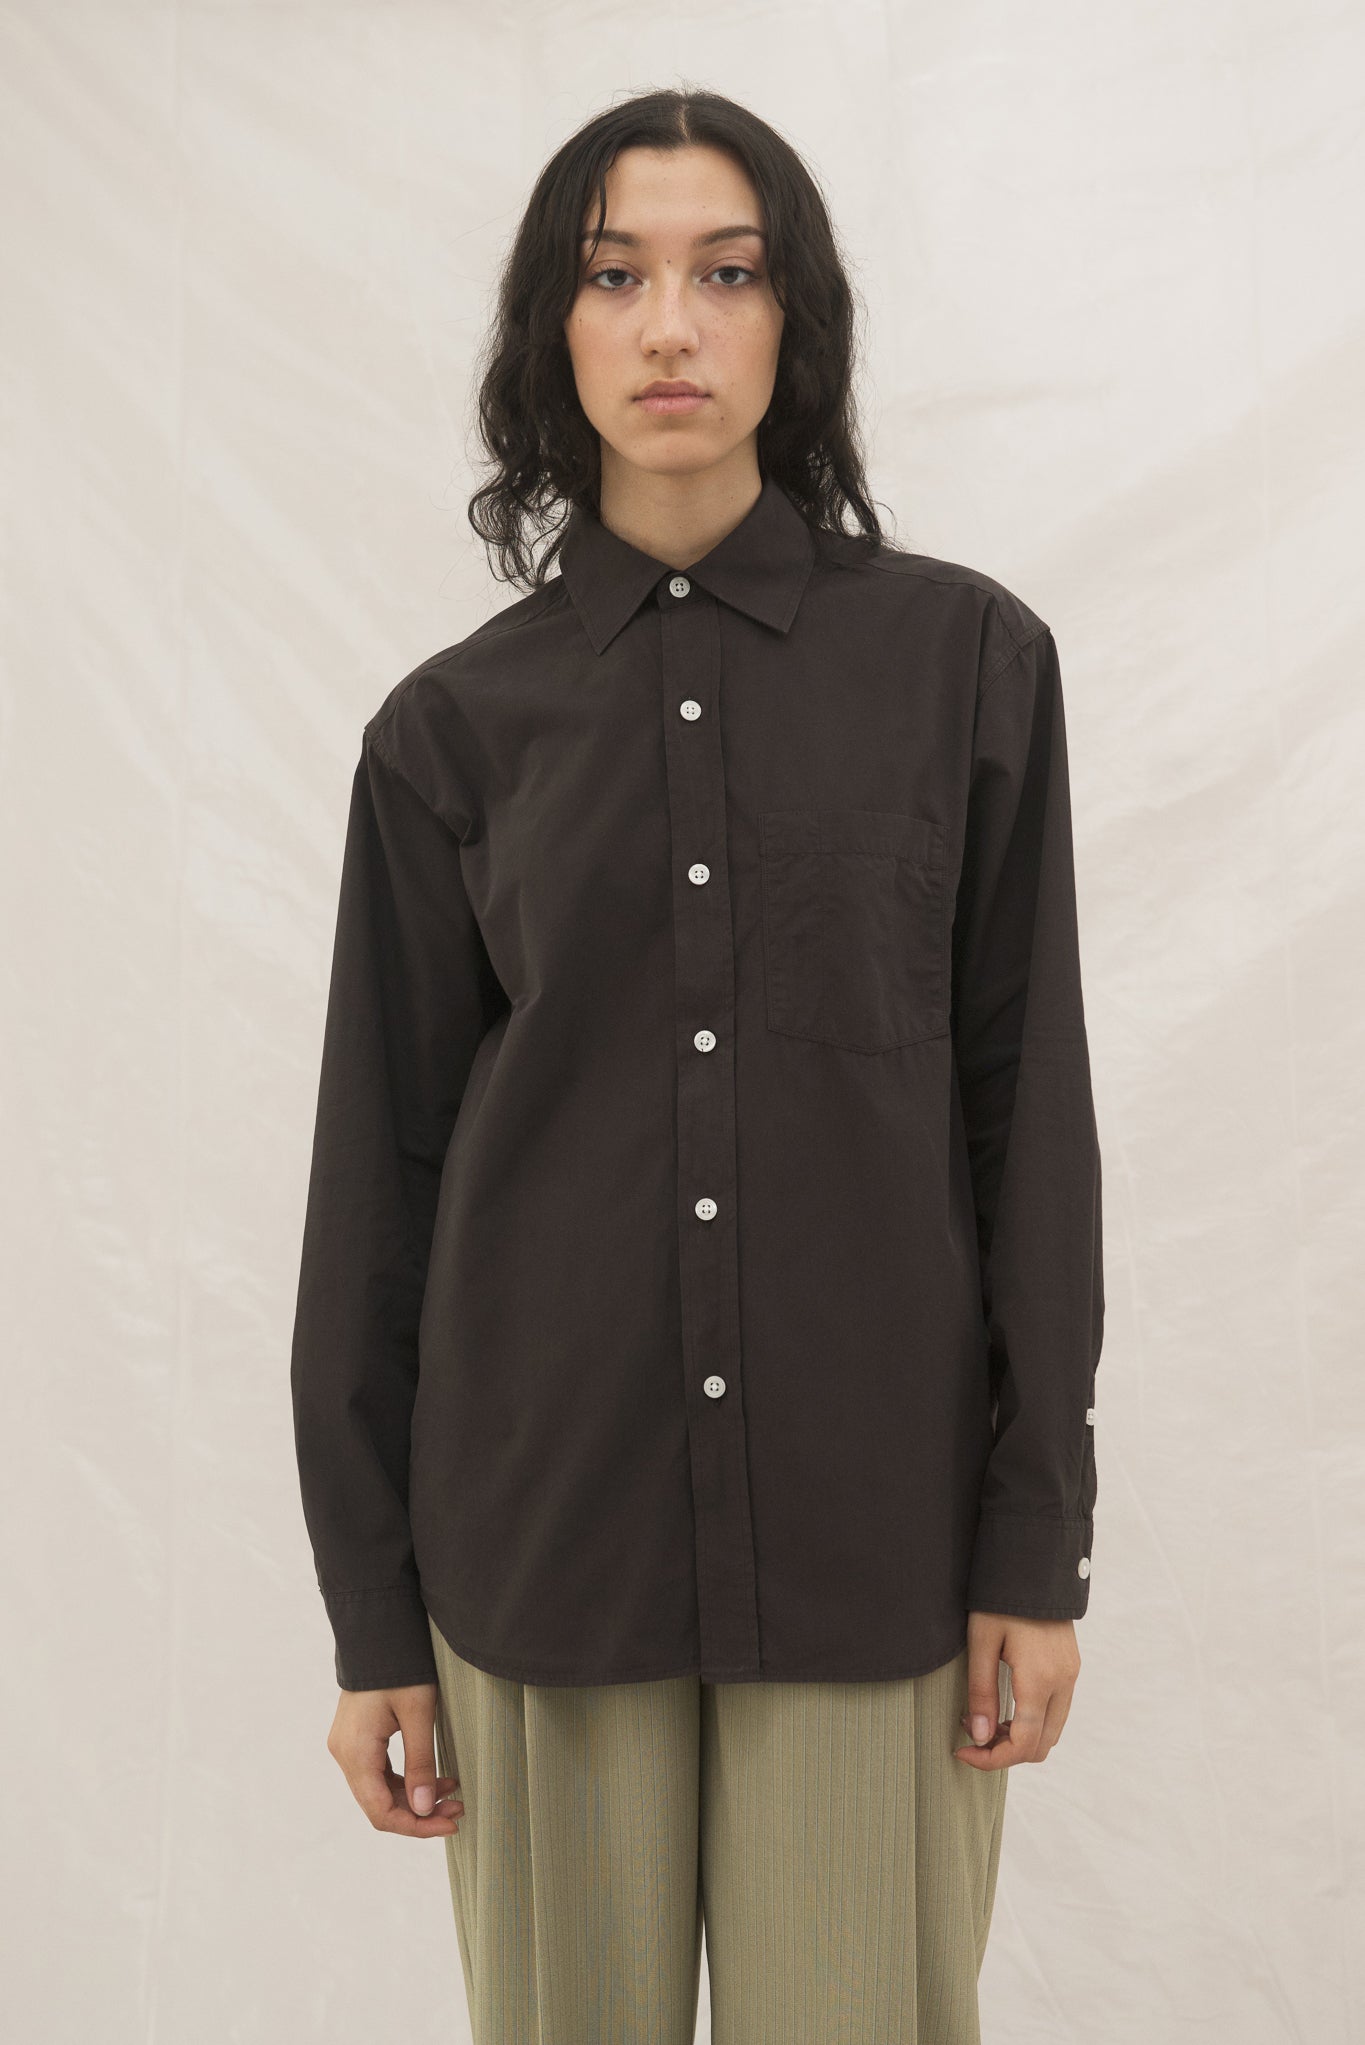 Convenient Organic Cotton Shirt in Dark Brown